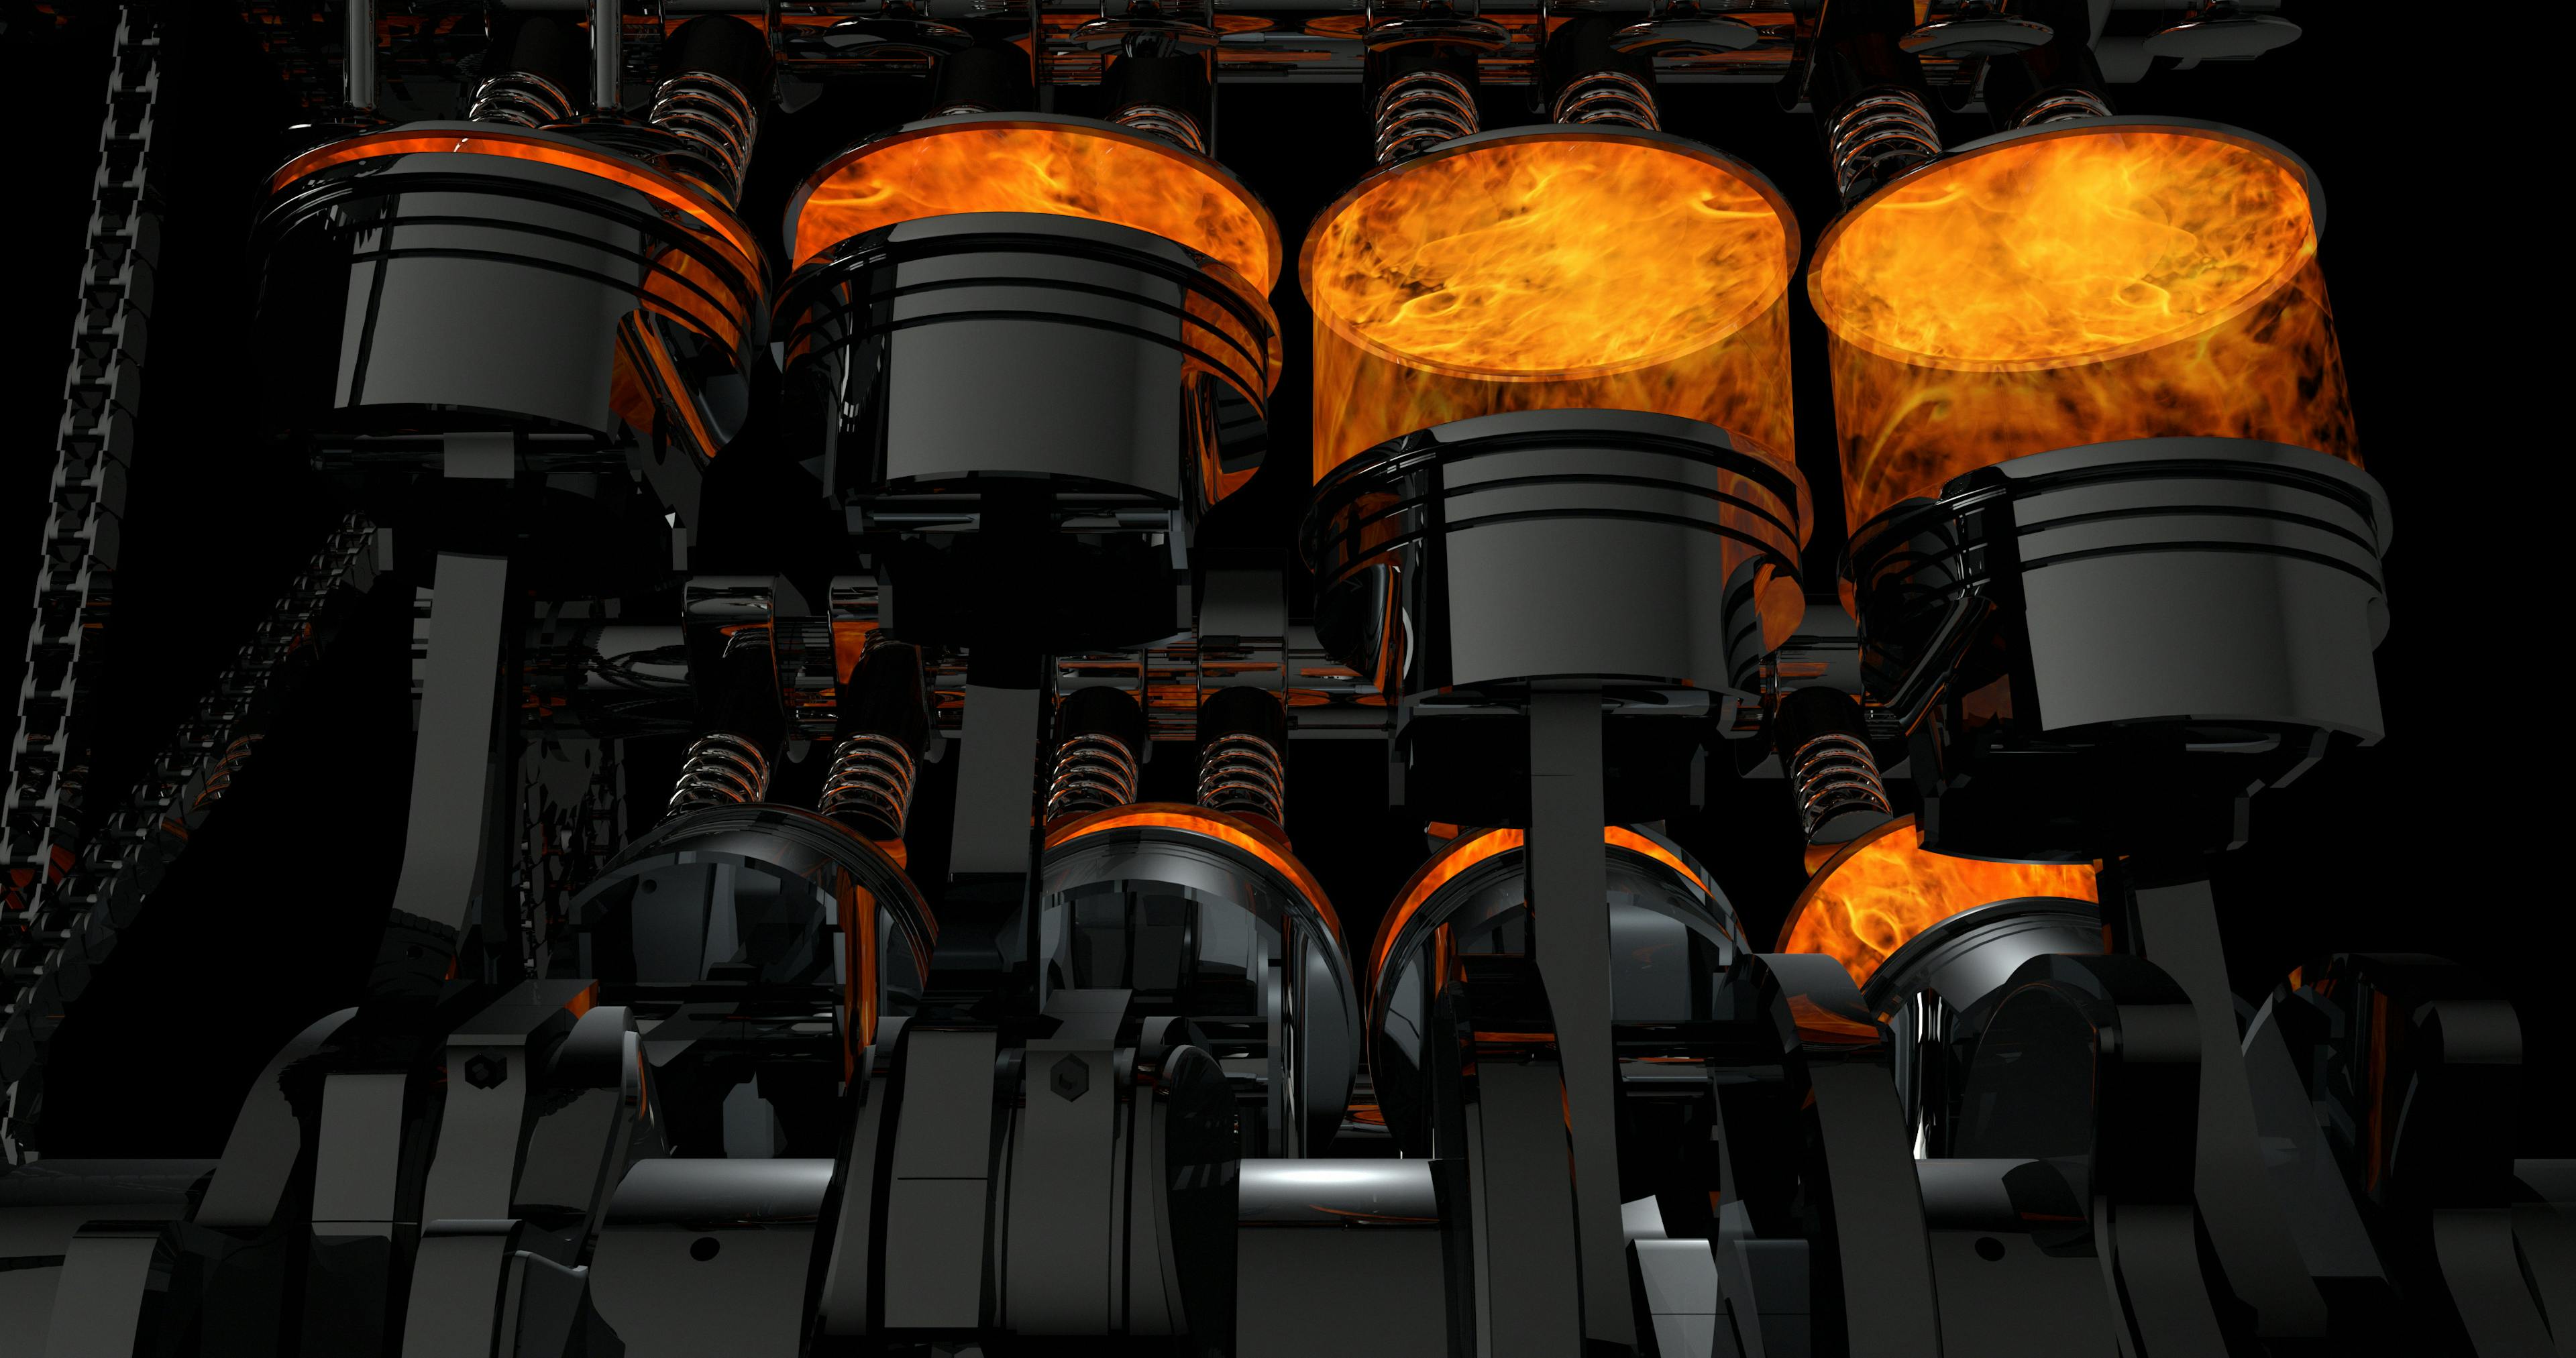 Modelo 3D de un motor V8 en funcionamiento. Los pistones y otras partes mecánicas están en movimiento.